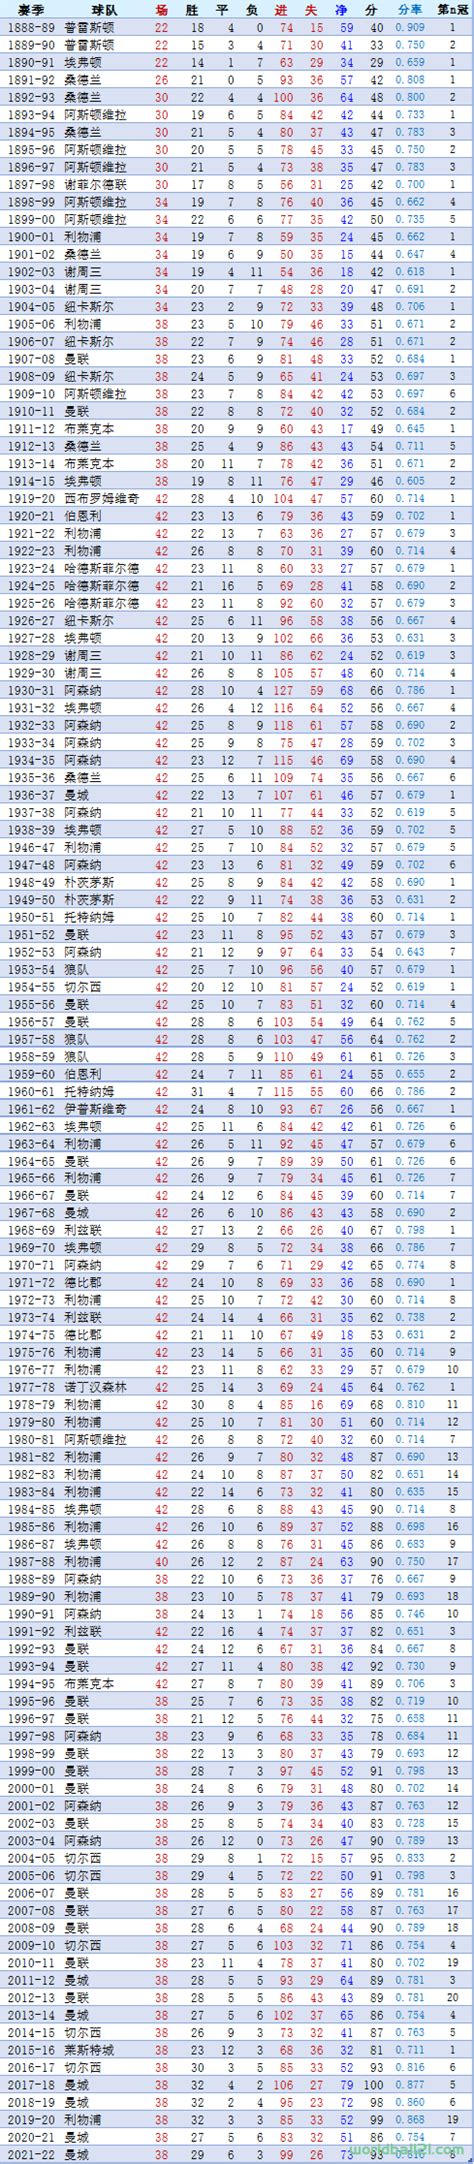 历届奥运会奖牌总排行榜(历届奥运奖牌榜统计表) - 中国工业网